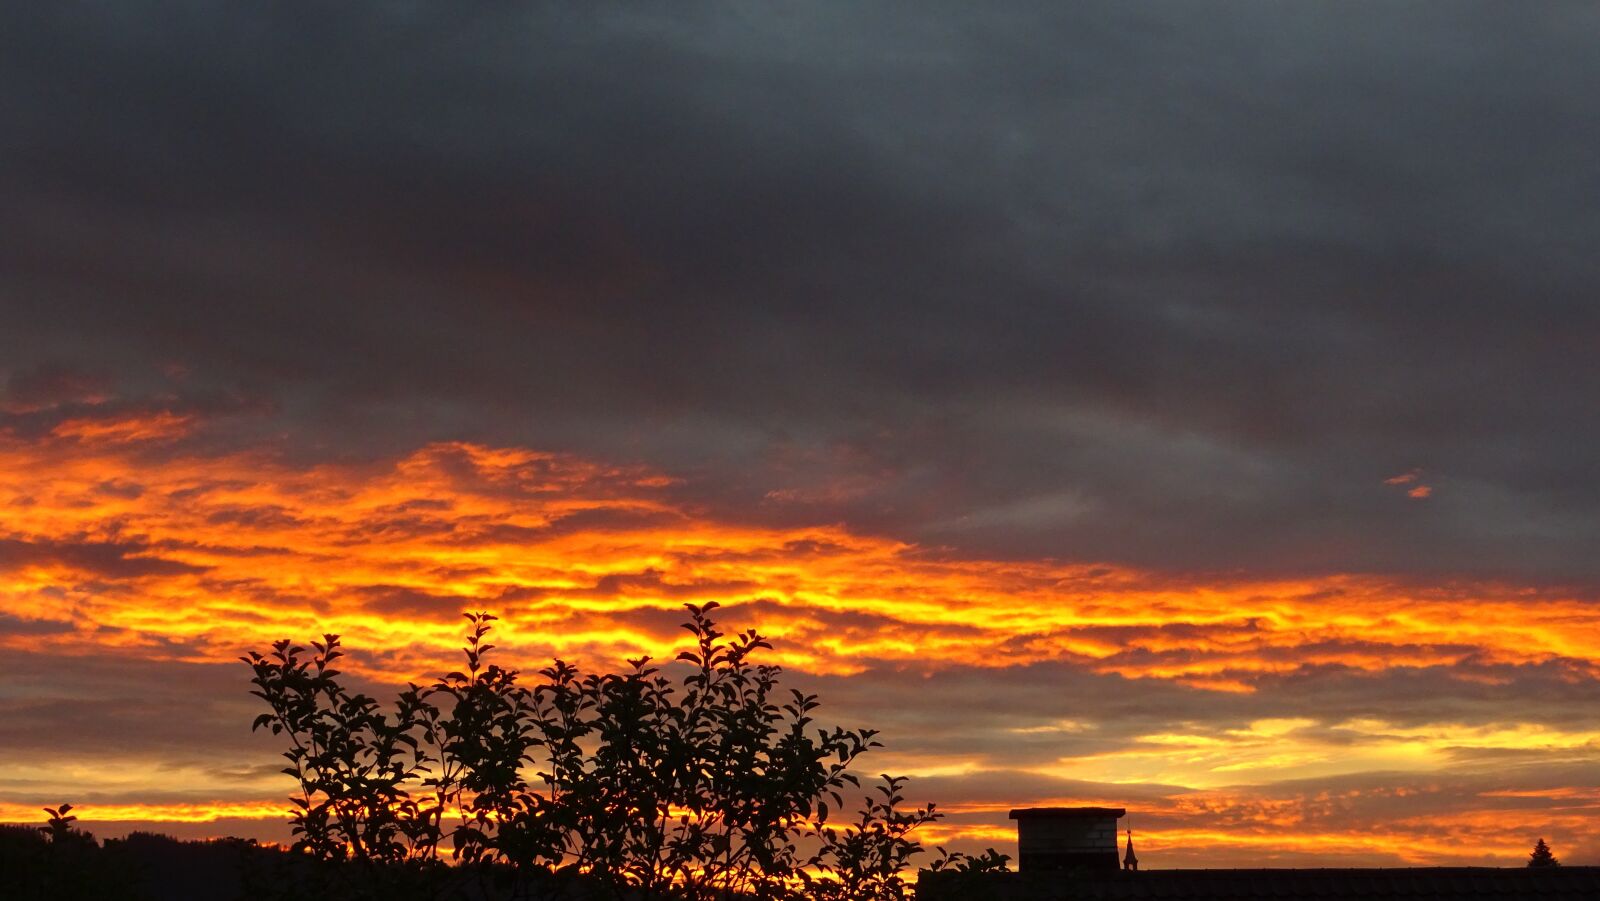 Sony DSC-HX60 sample photo. Clouds, sky, sunrise photography